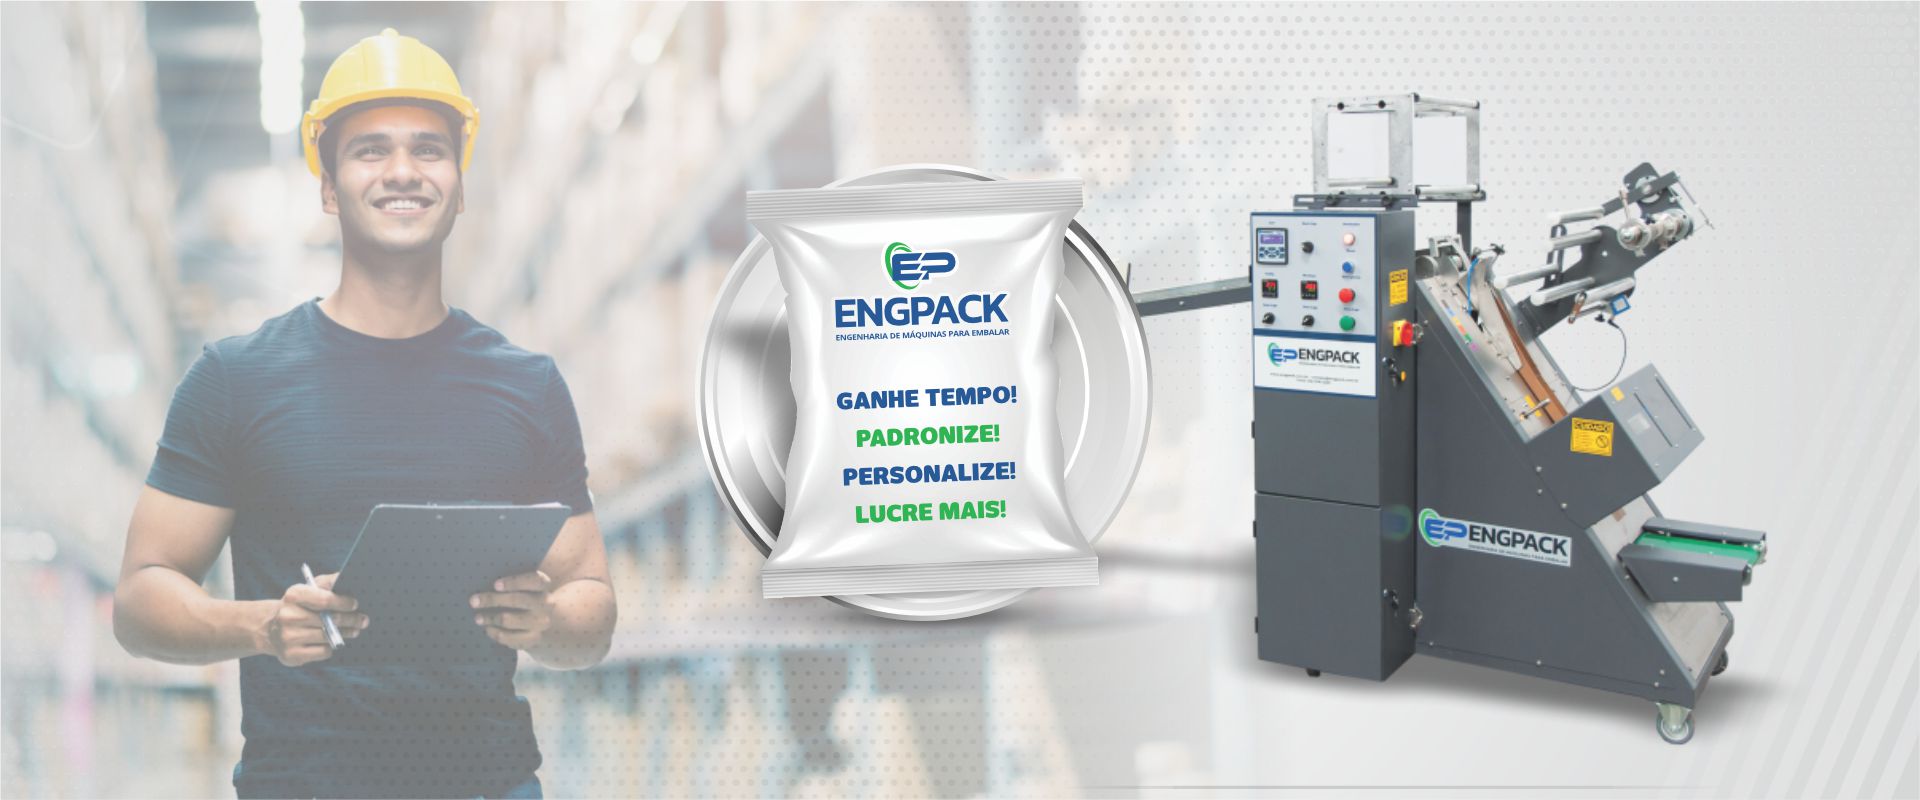 Engpack Empresa de Máquina Embaladora Flow Pack